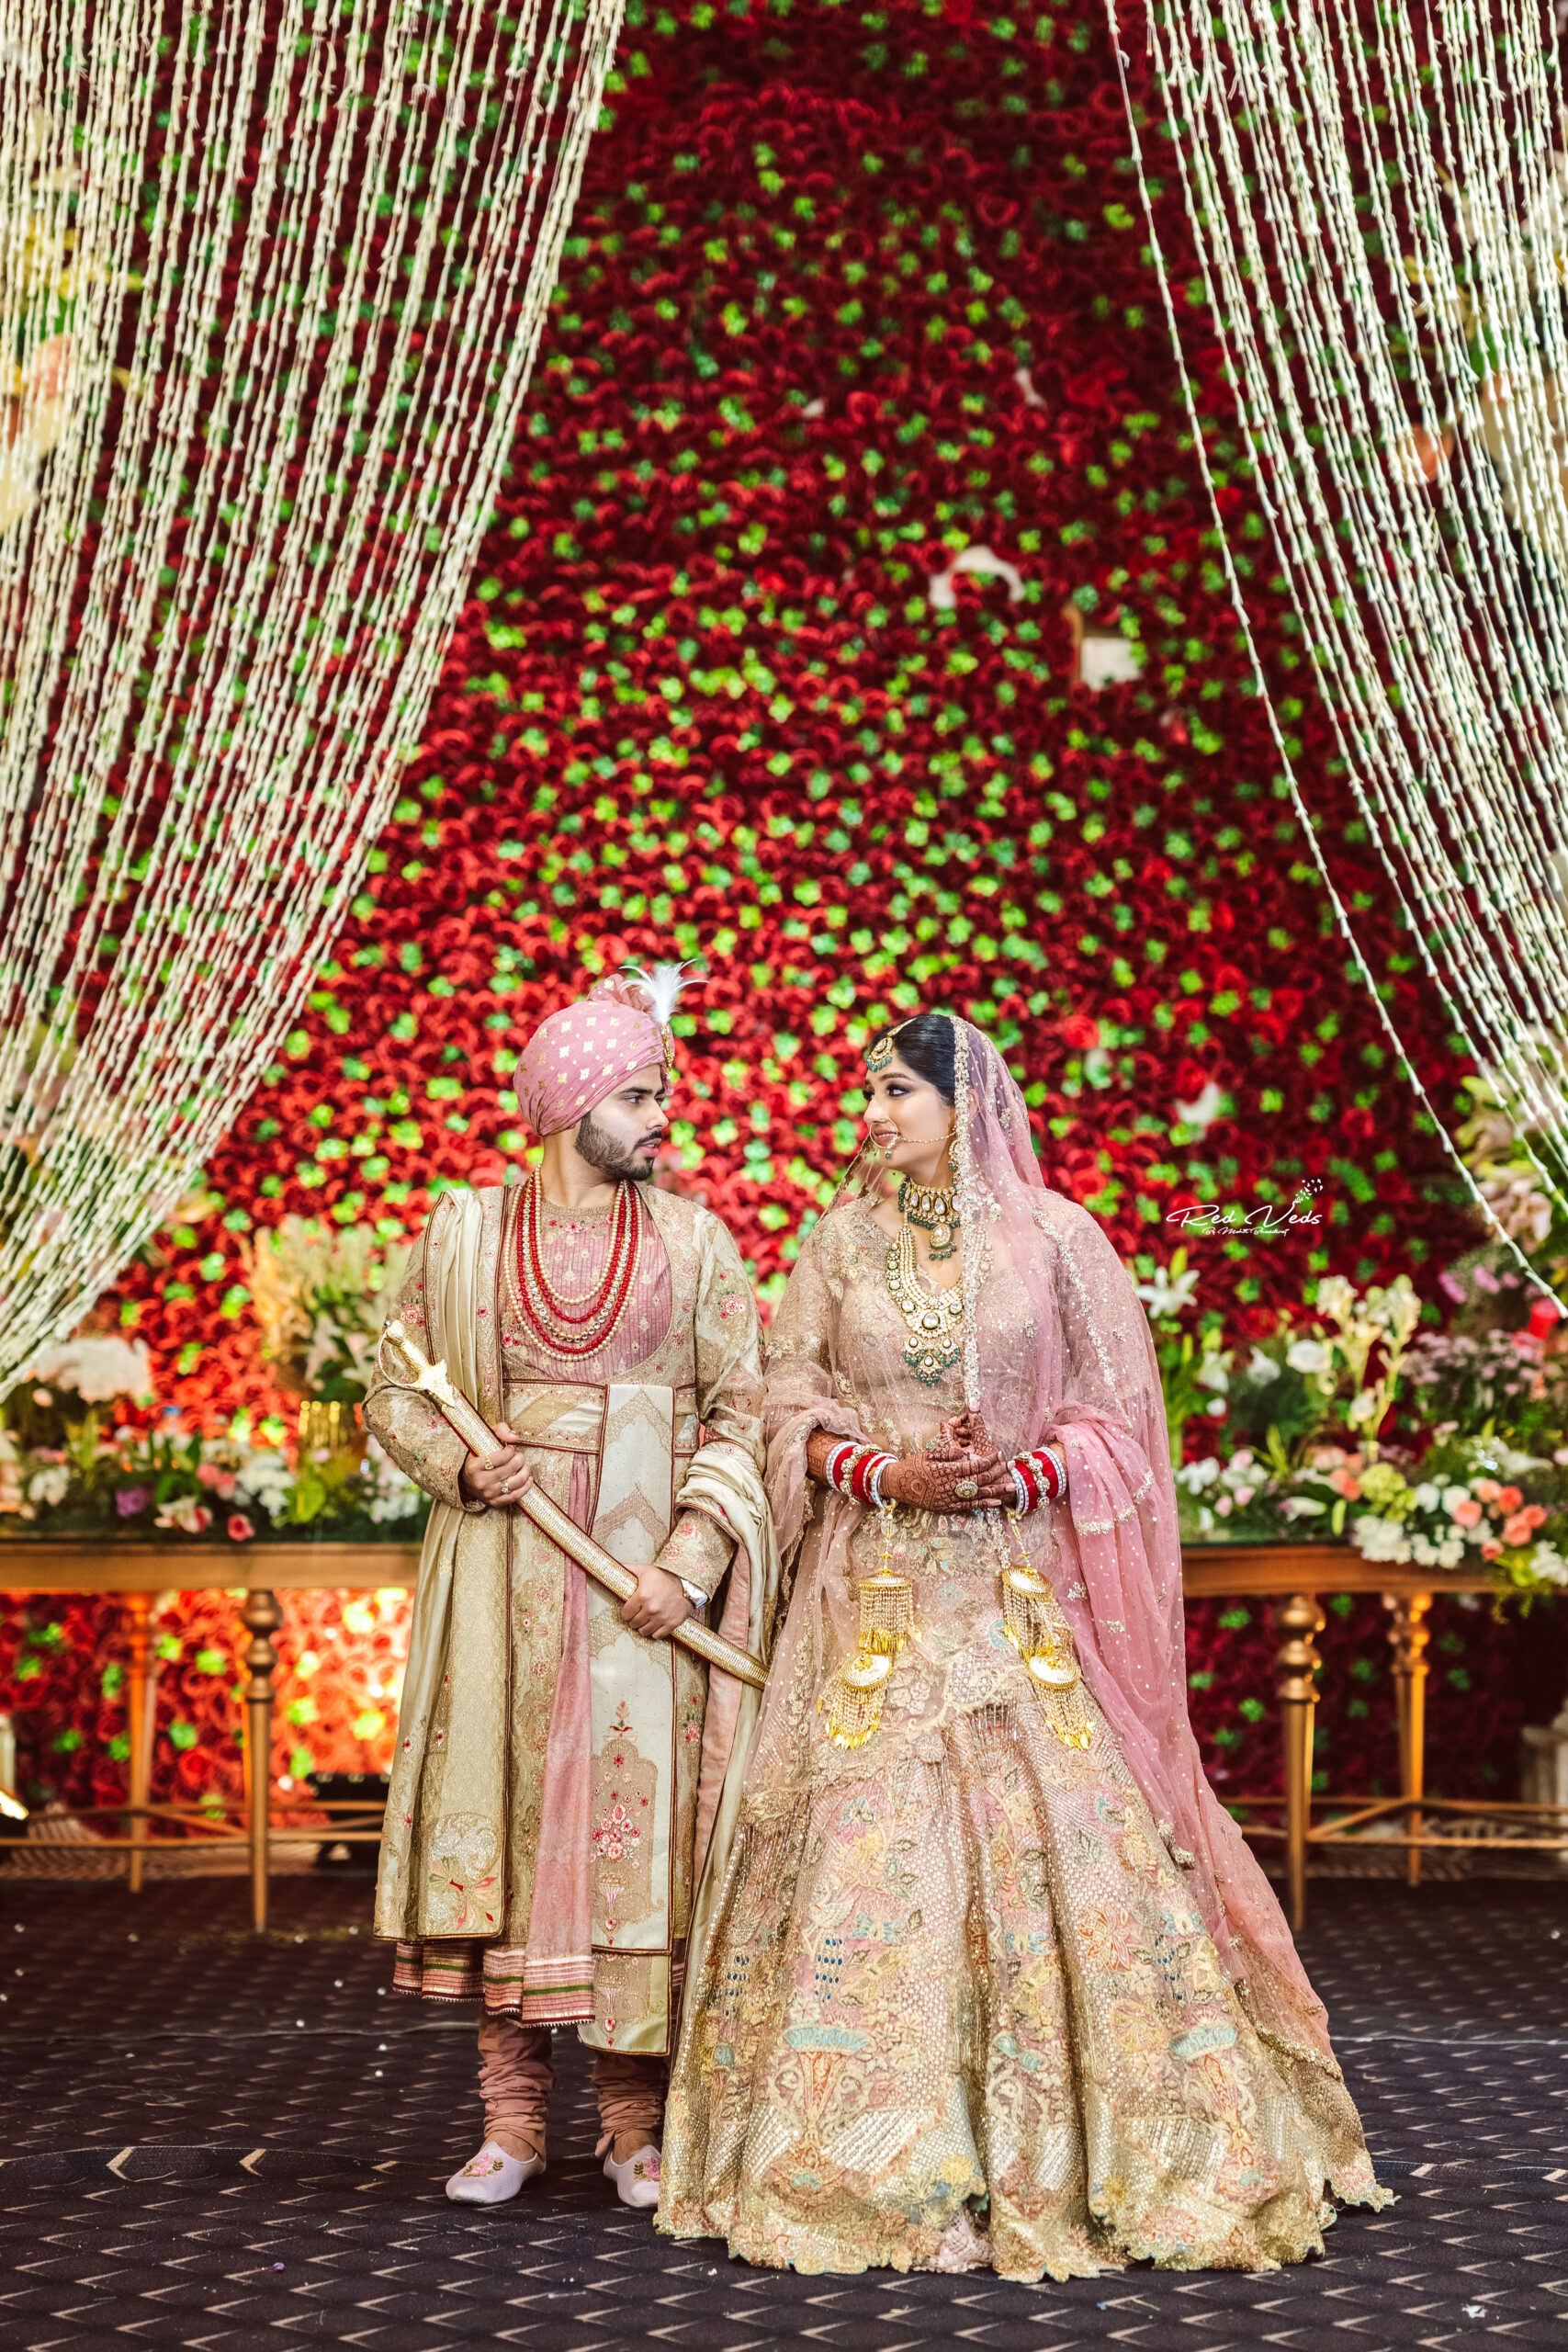 Latest Indian wedding couple photography poses 2022 | Latest Photoshoot | Dulha  Dulhan Photo poses - YouTube